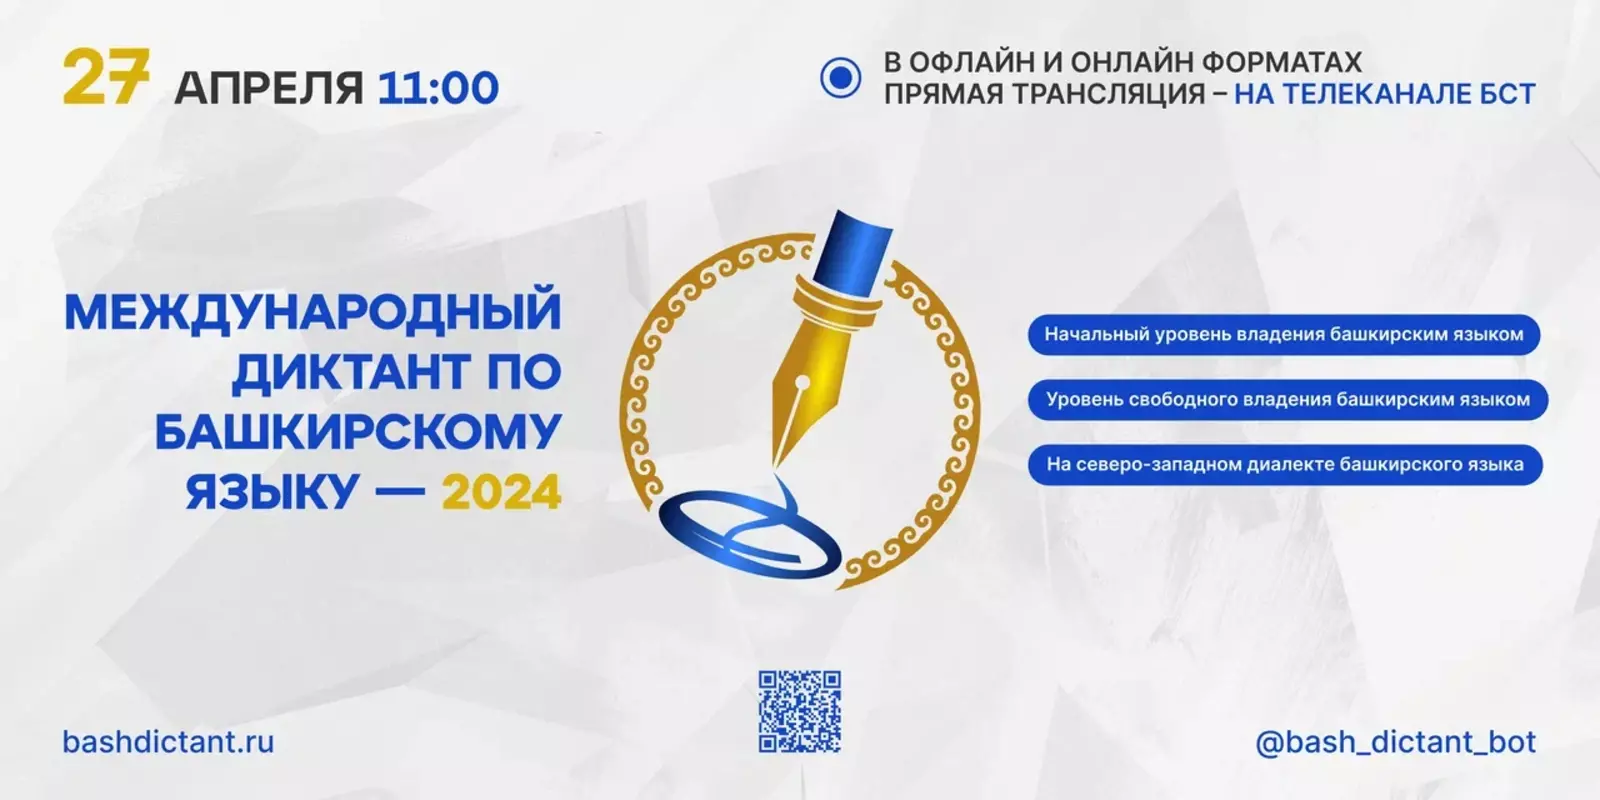 С 27 по 29 апреля пройдёт Международный диктант по башкирскому языку